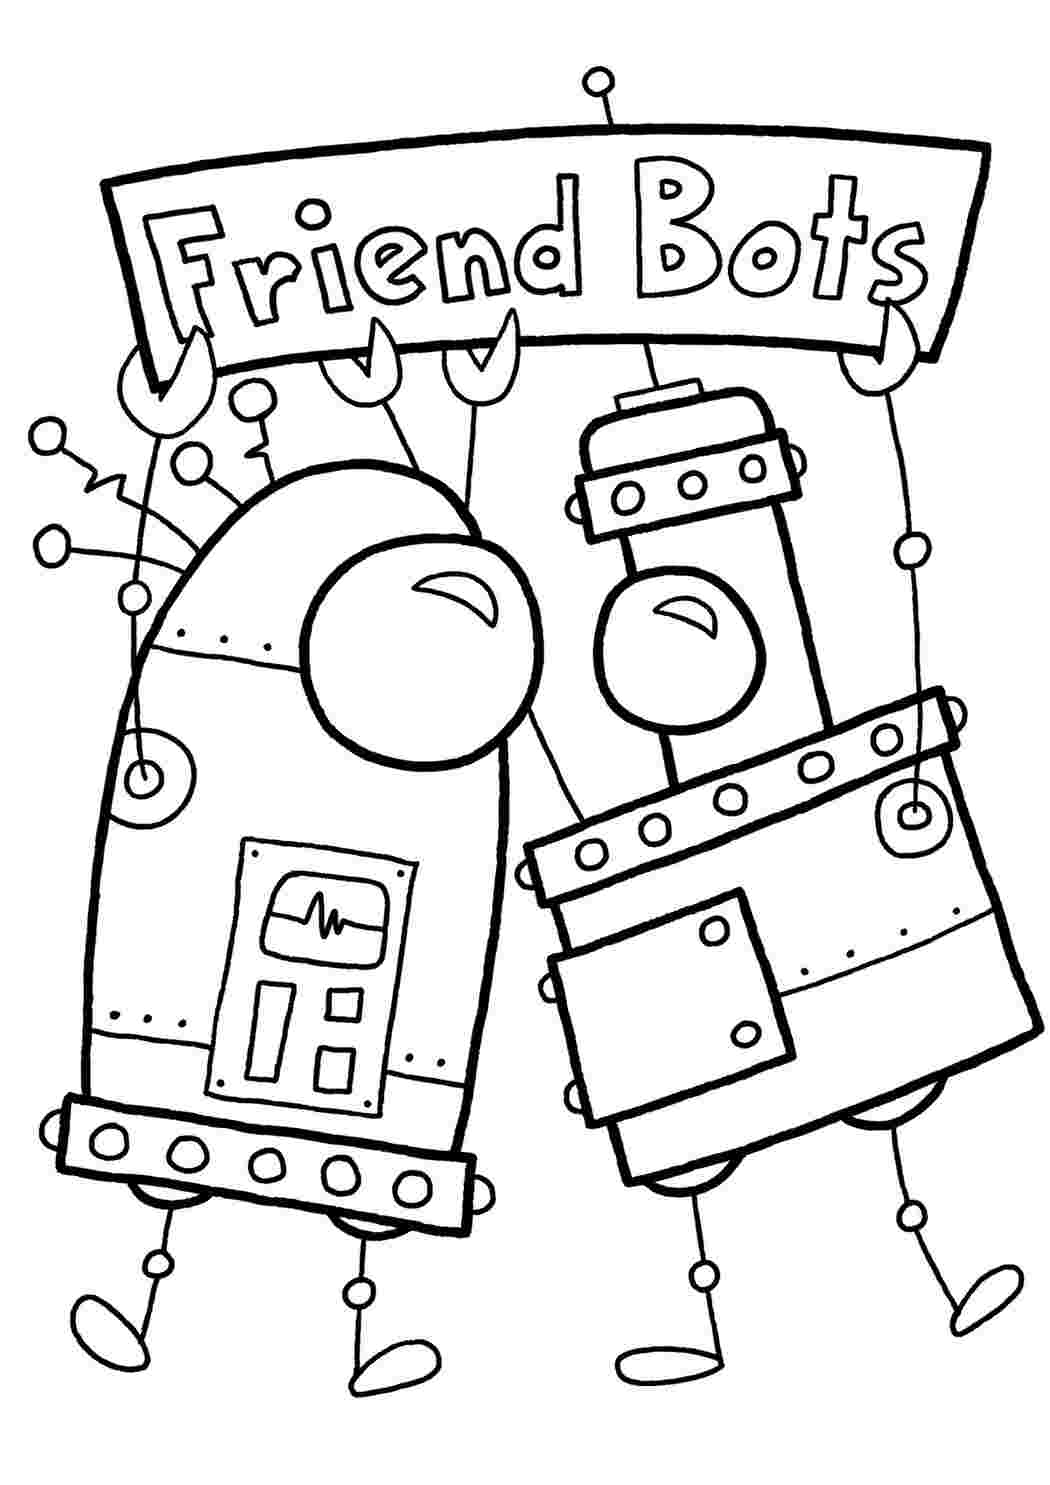 Раскраски картинки на рабочий стол онлайн Друзья роботы Раскраски для мальчиков бесплатно